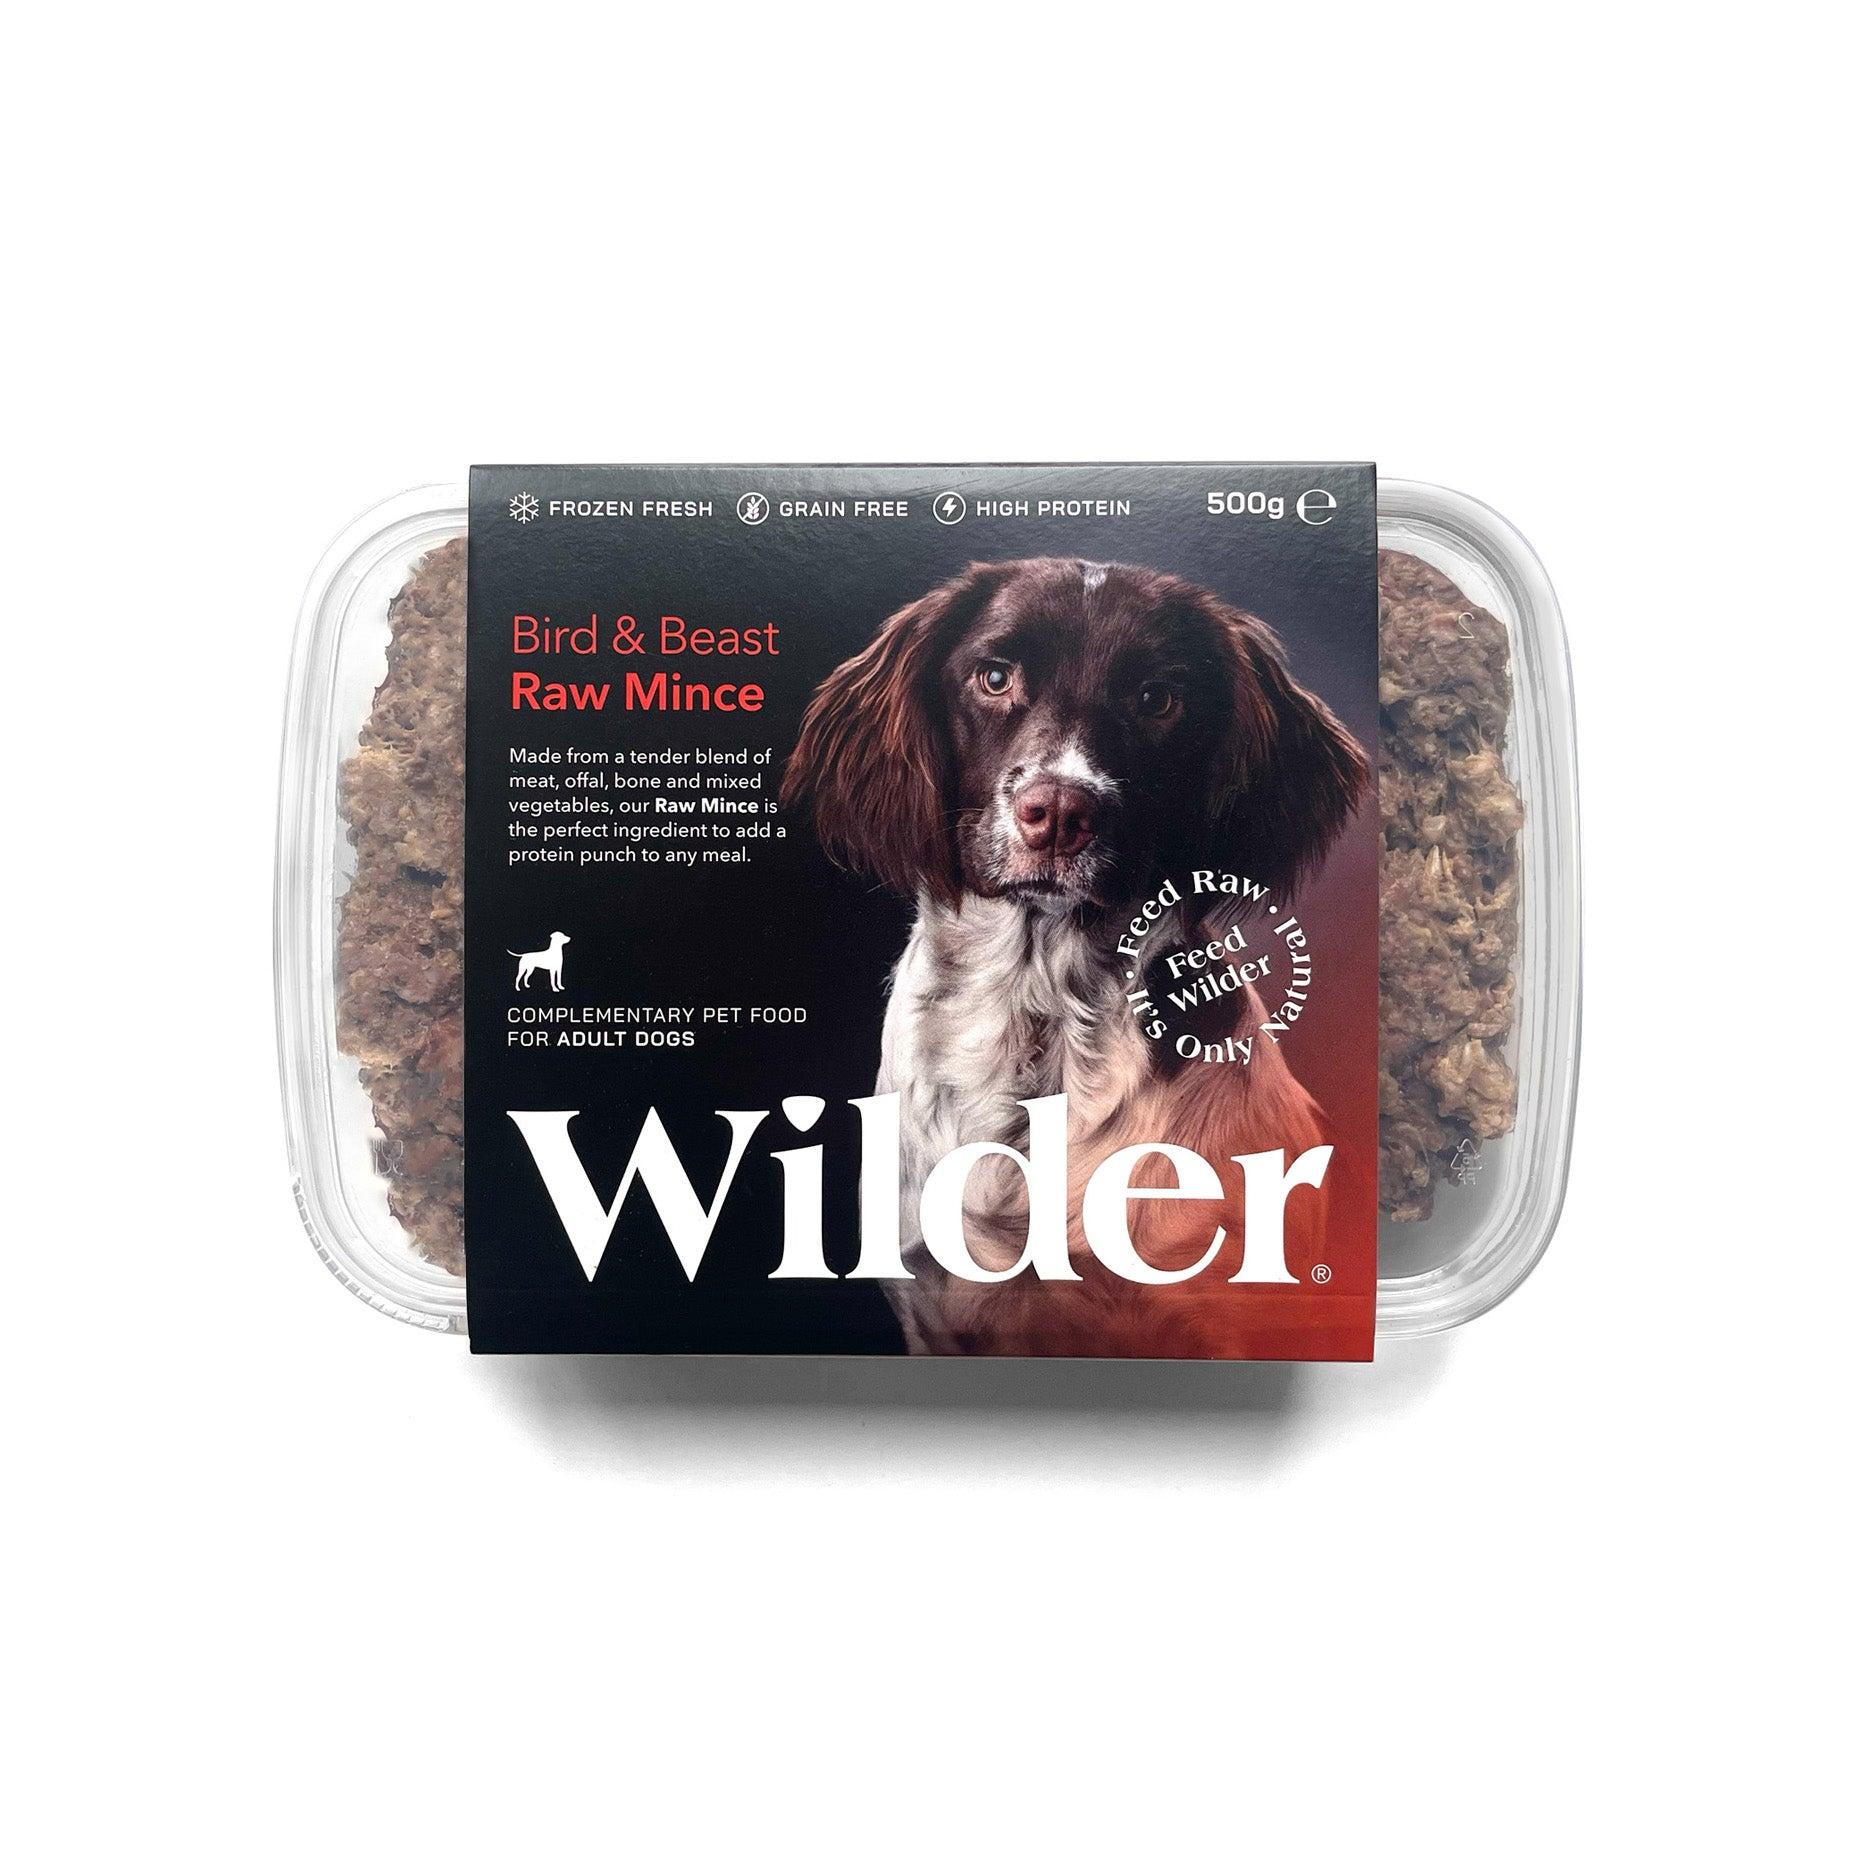 Wilder Bird & Beast Raw Mince 500g Pack Orange Label